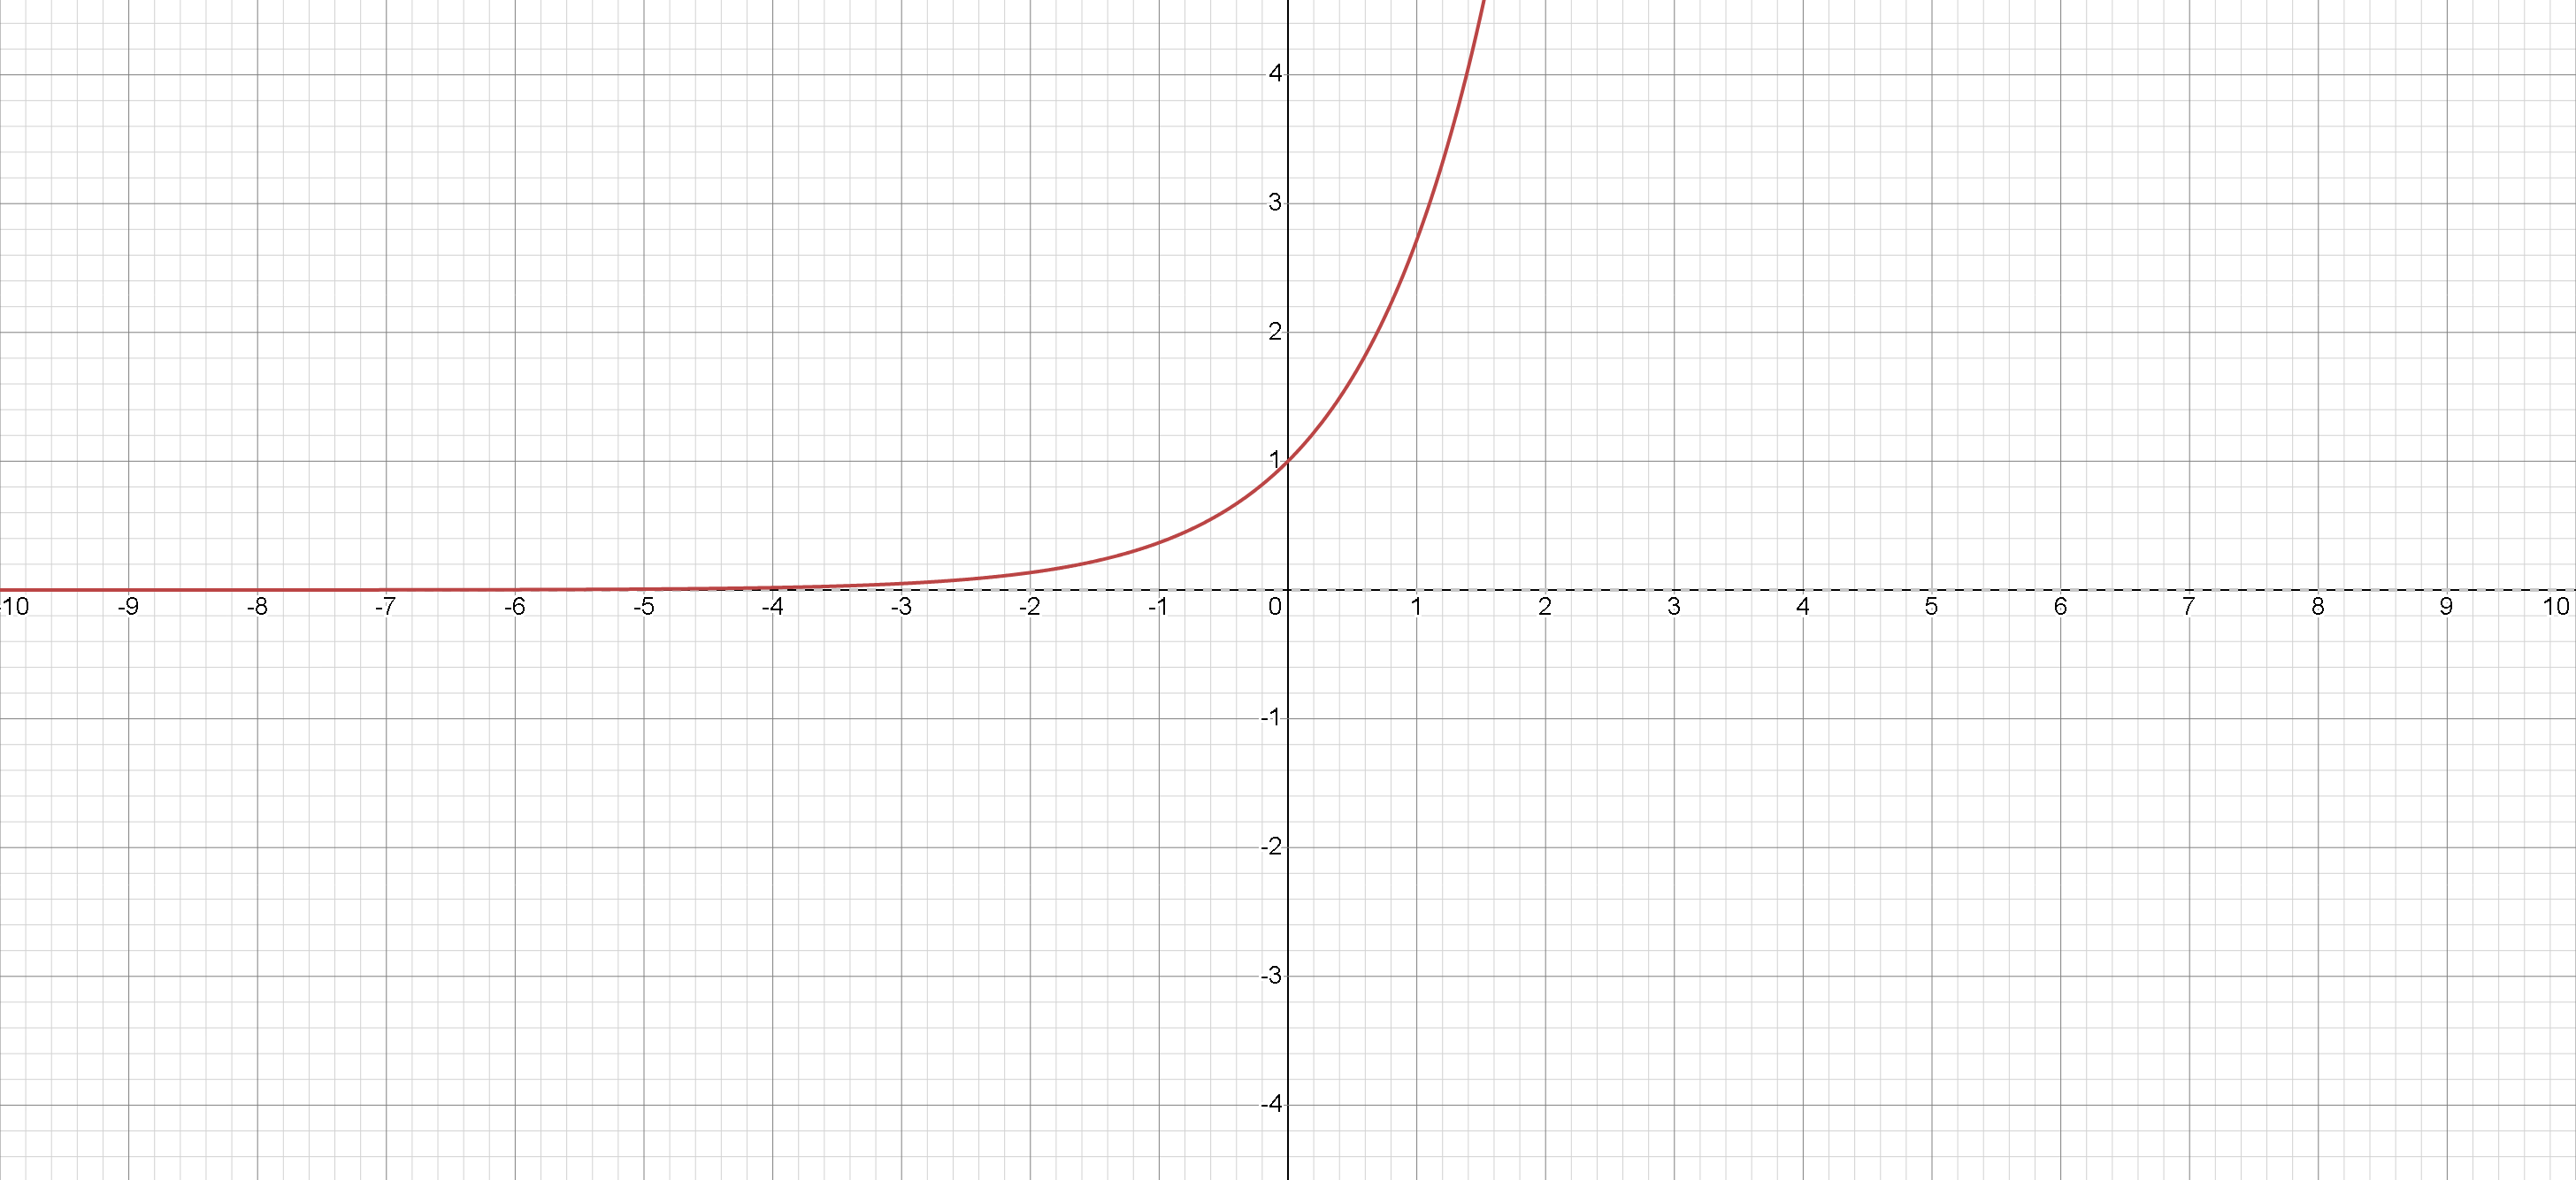 exponential_e_graph